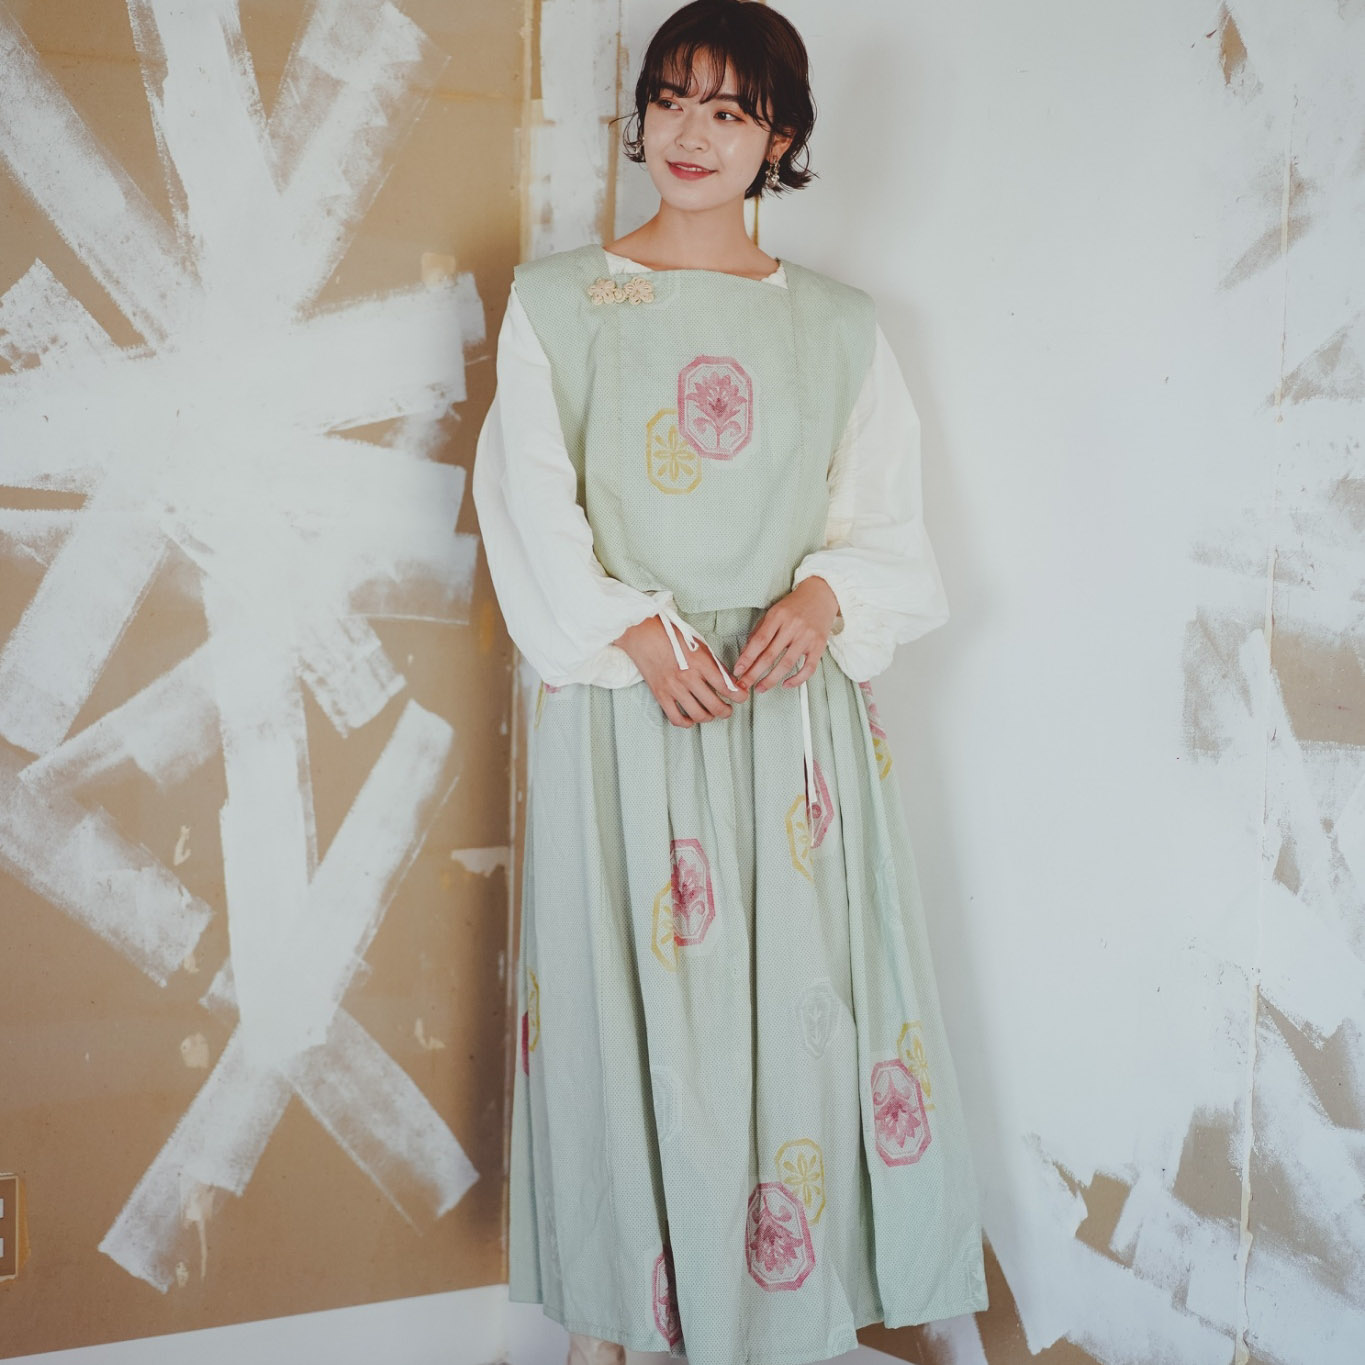 Kimono china set up ベスト セットアップ 激安セール チャイナ 正規品スーパーSALE×店内全品キャンペーン ロングスカート くすみカラー 着物リメイク